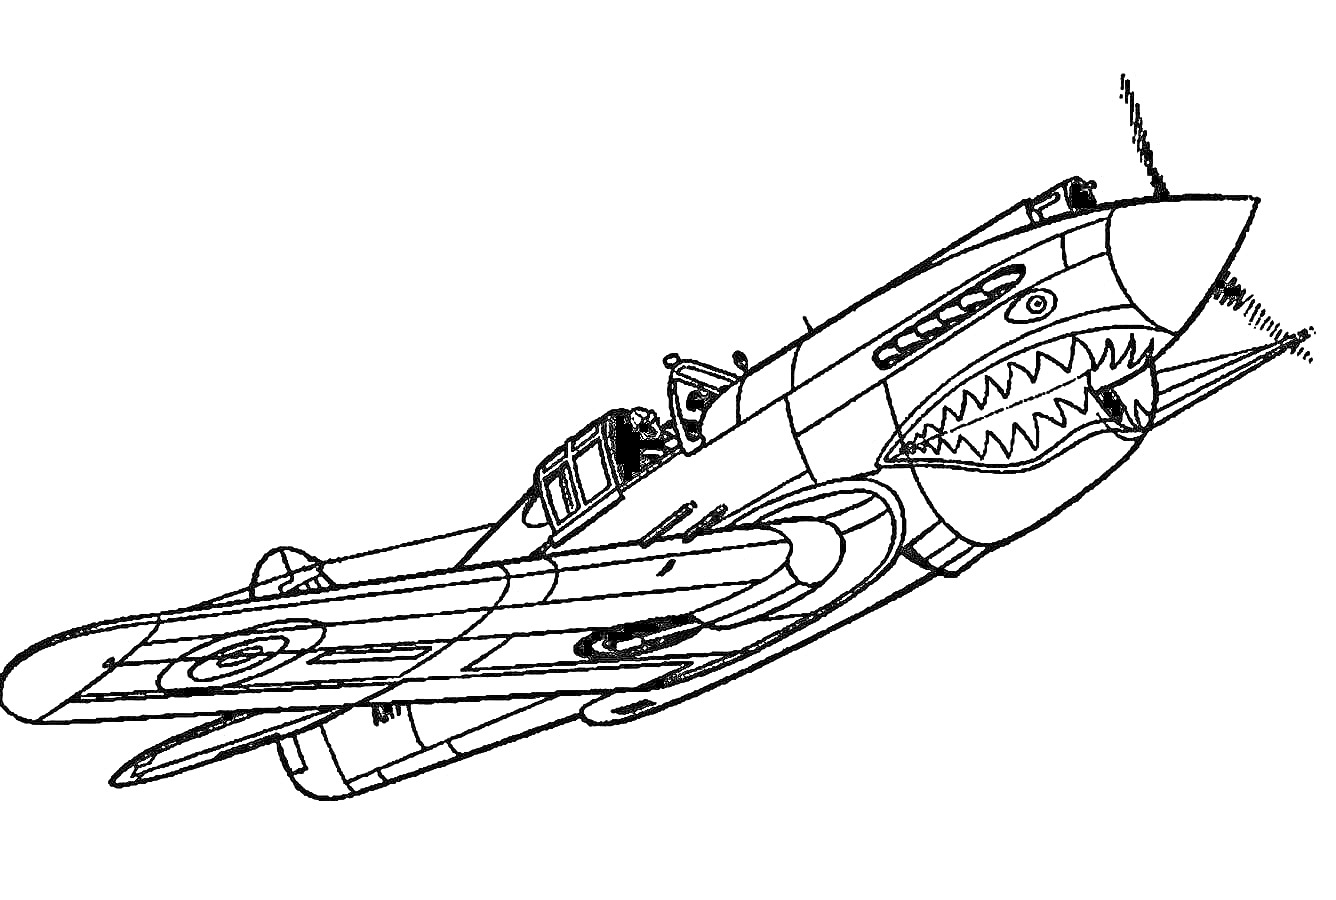 Раскраска Военный самолет с изображением акульих зубов на передней части, пилот в кабине, оружие на крыльях, авиационные знаки на крыльях, винт спереди.